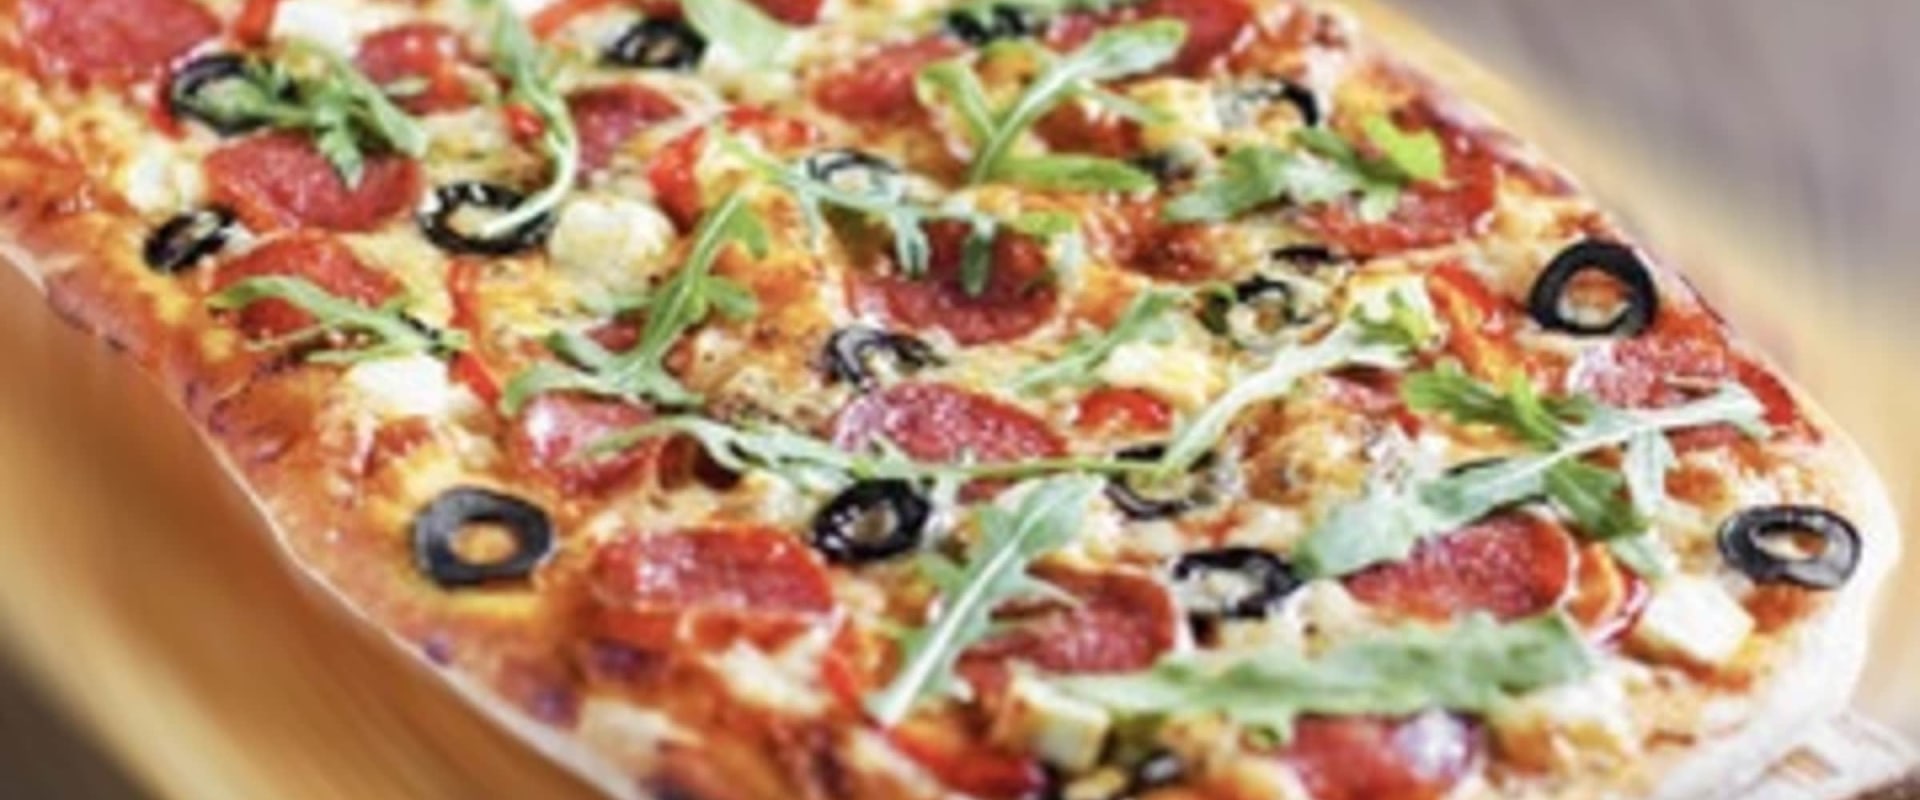 Pesto Pizza in Central Virginia: Your Pie Pizza in Blacksburg